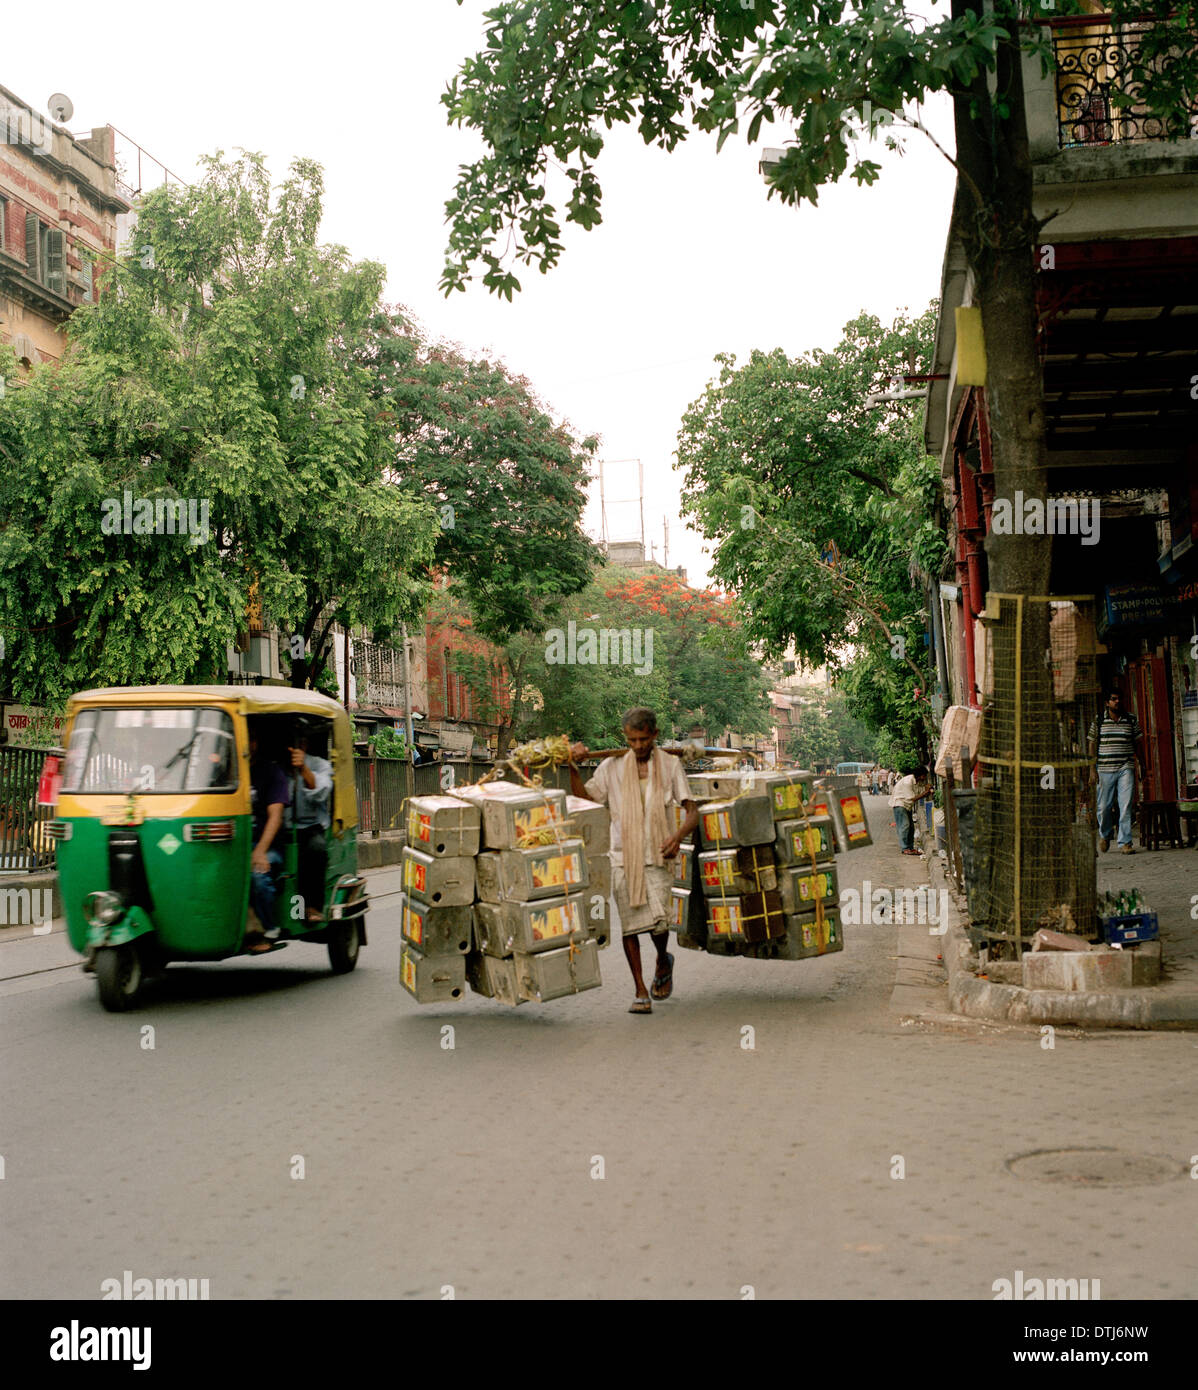 Coolie Mann und manuelle Arbeit auf den Straßen der Stadt von Kalkutta Kalkutta in Westbengalen Südasien. Besetzung Leben Lifestyle Transport der Dritten Welt Stockfoto